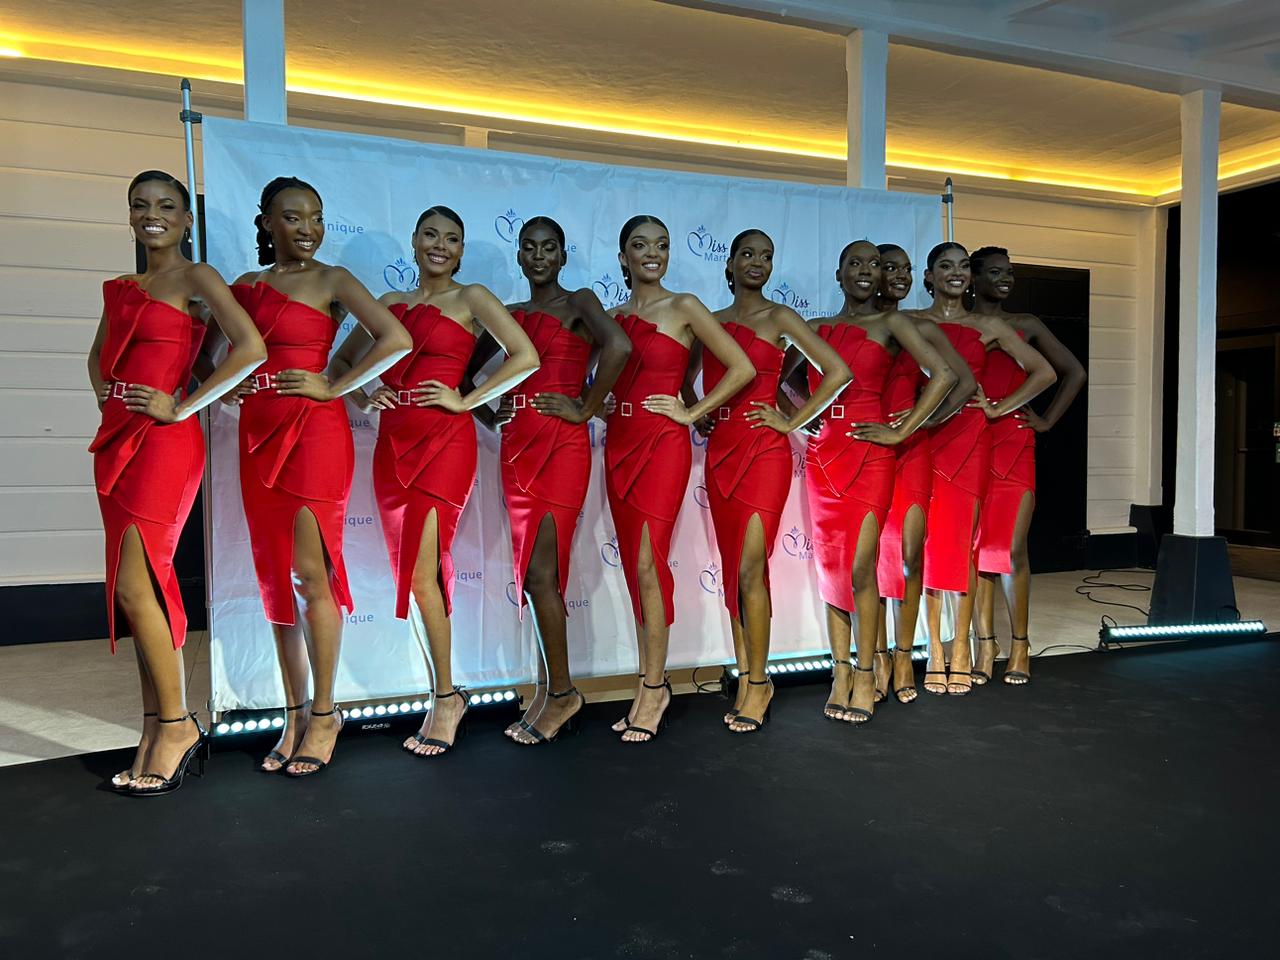     Les 10 finalistes de Miss Martinique 2023 révélées

